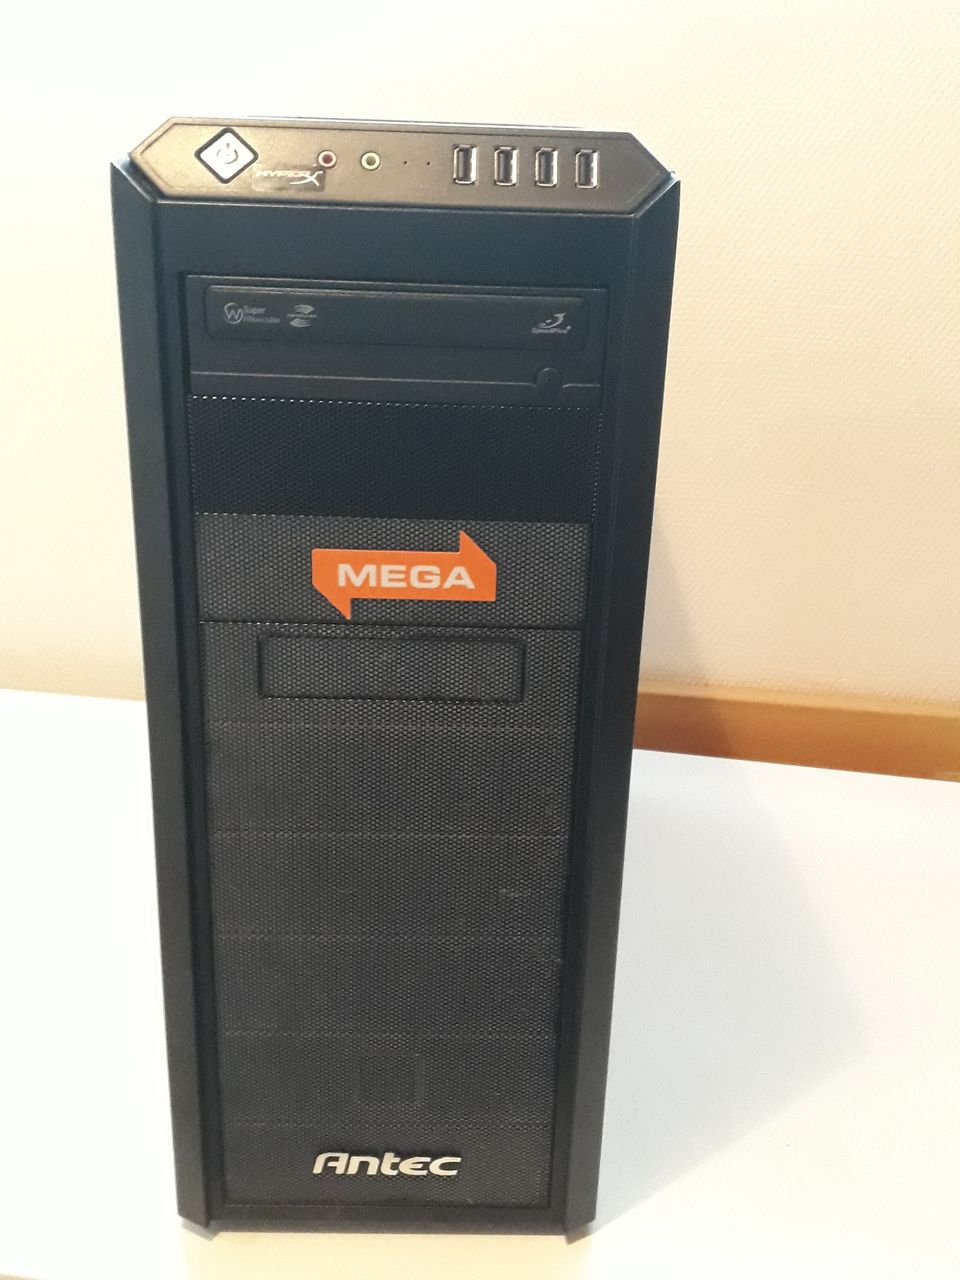 Asus P6X58D-E + Xeon W3680 tietokone